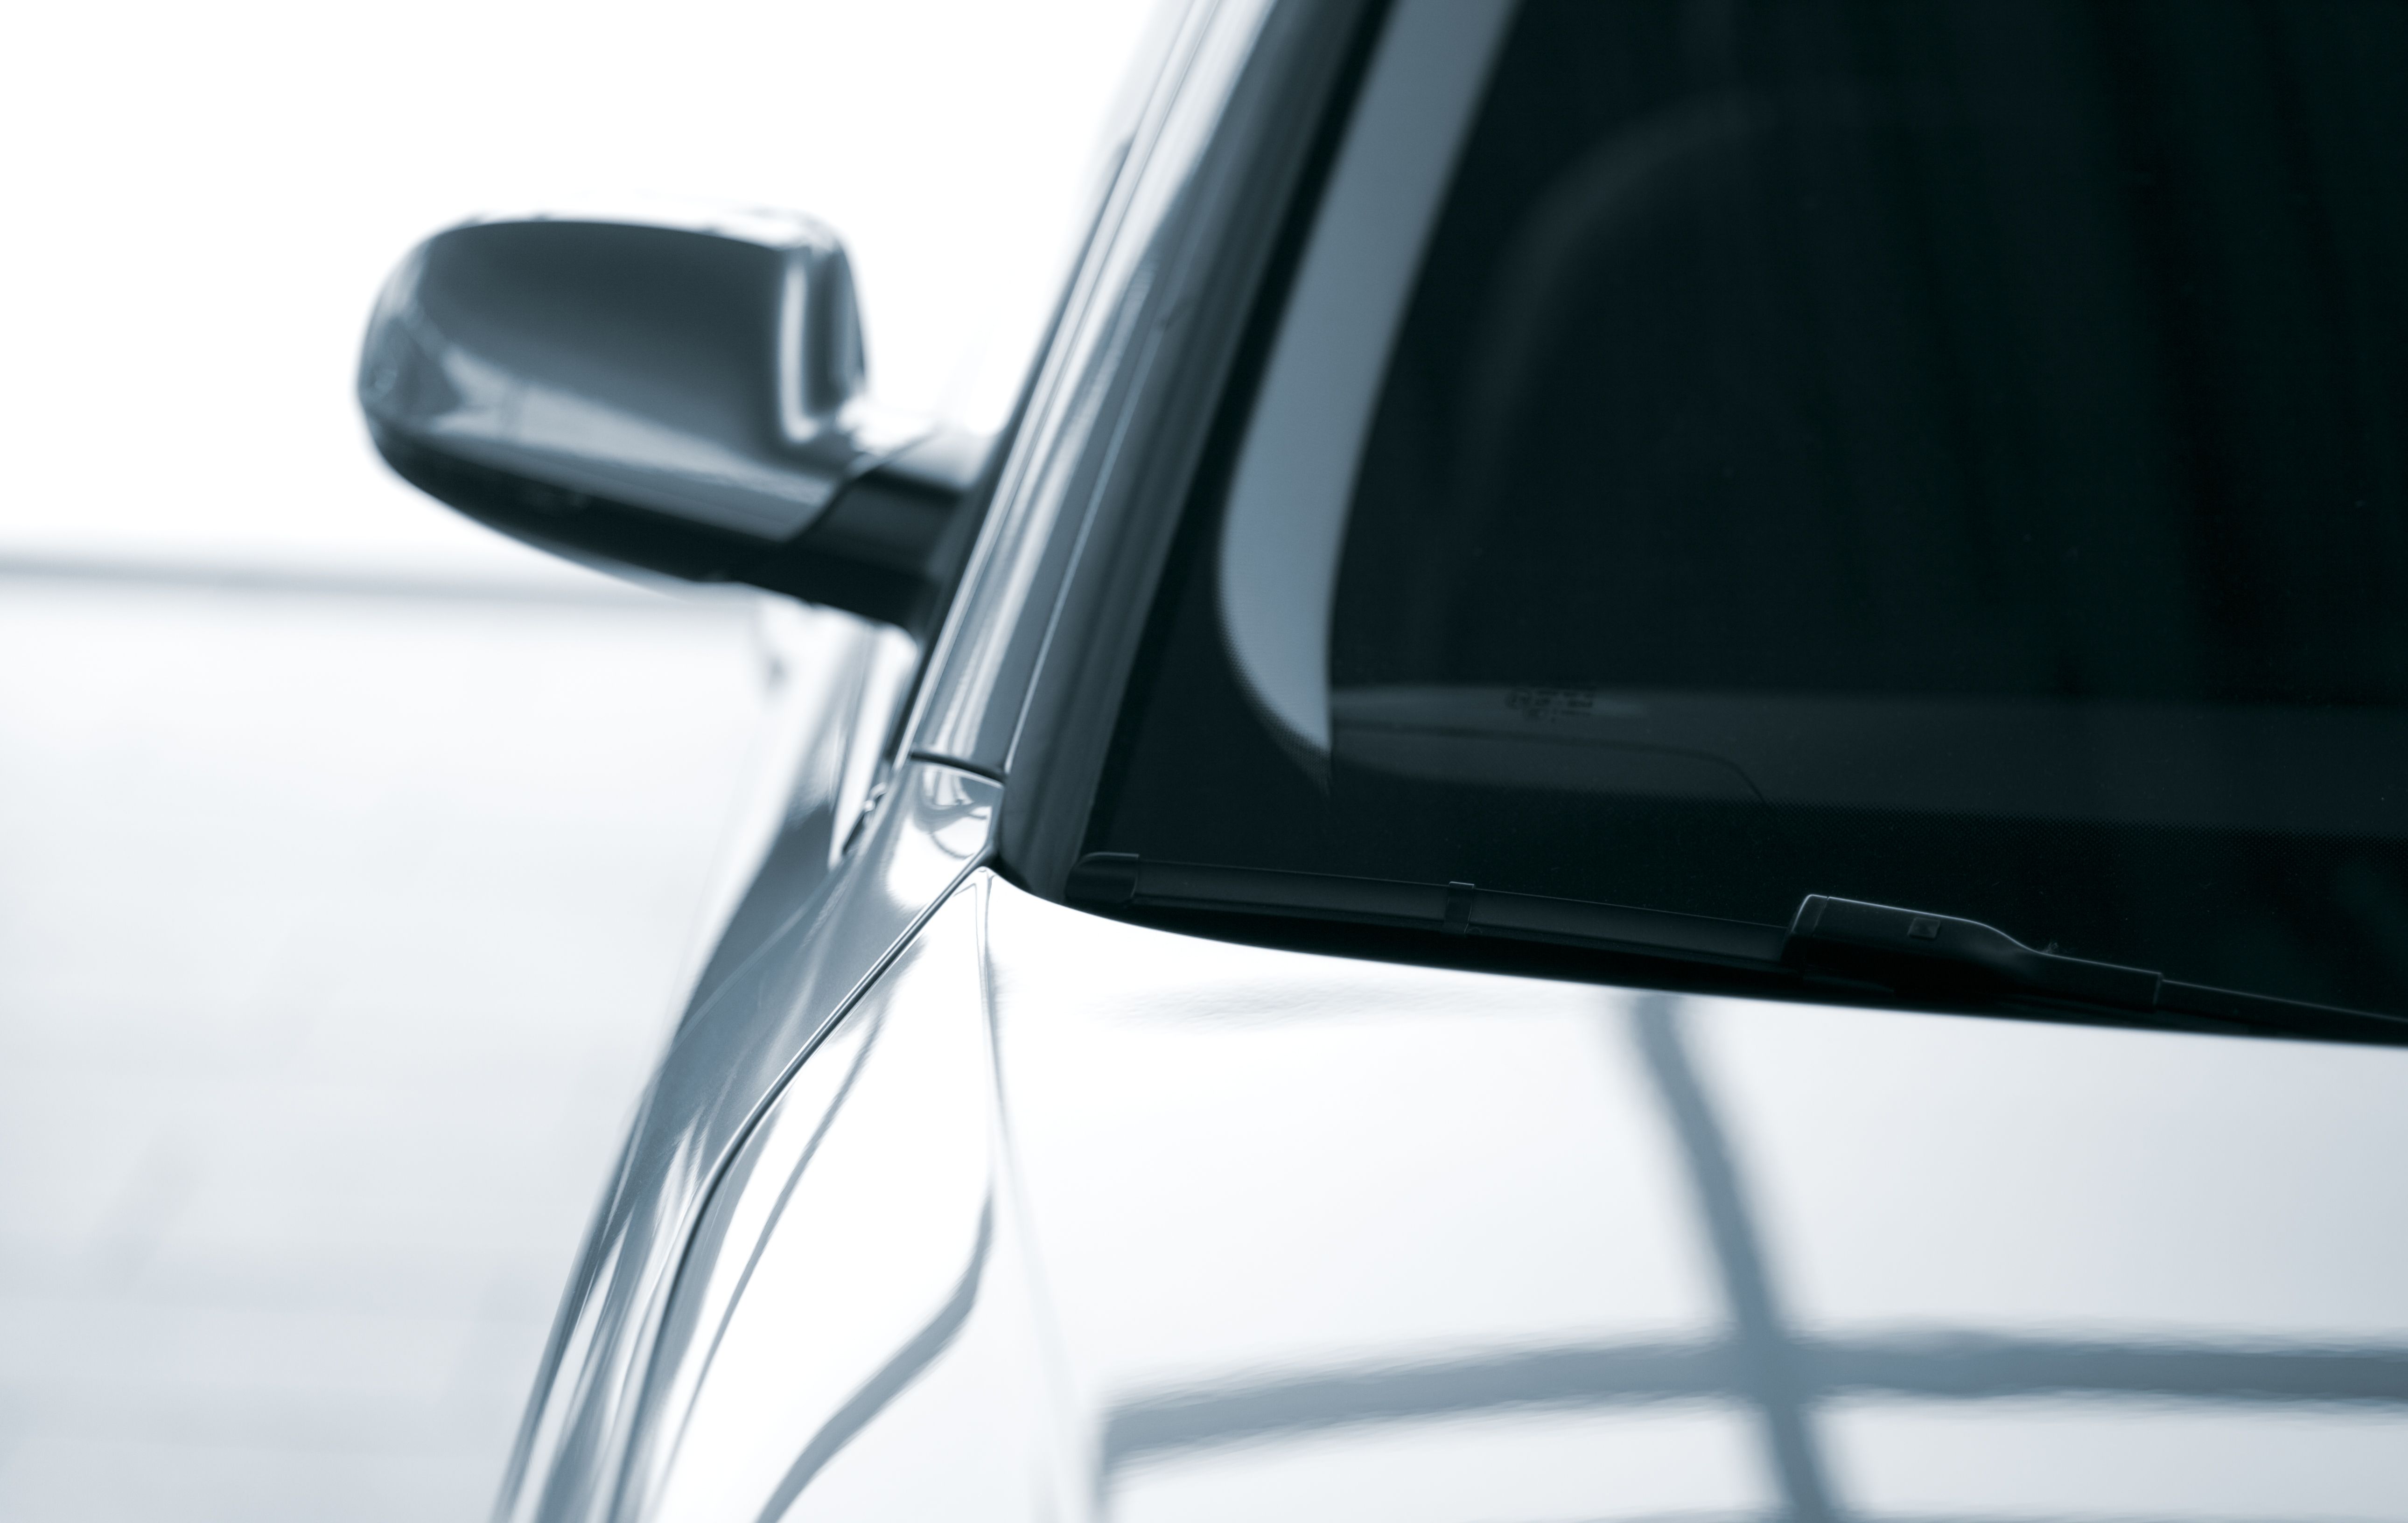 Car Side Mirror Squeegee Rear Wiper Window Face Scraper Automotive